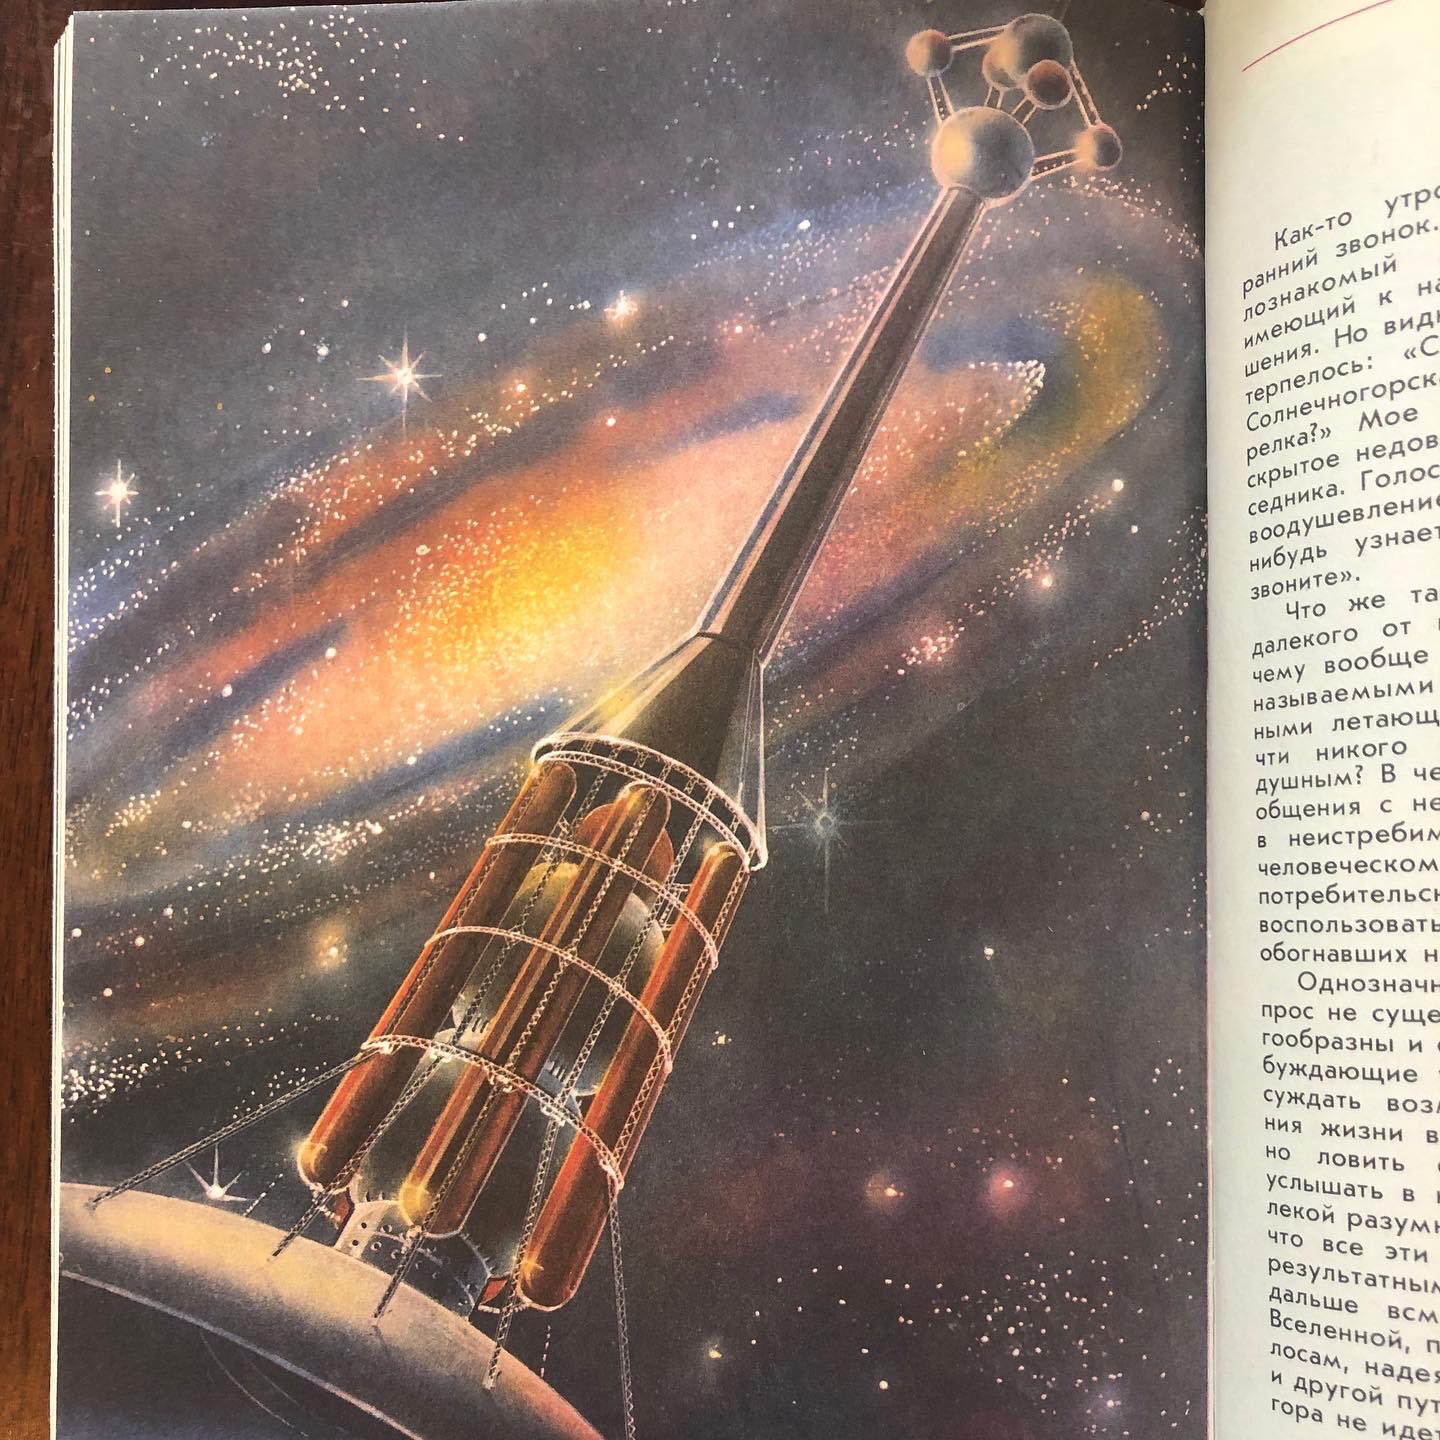 Johnnyjumpup 七夕なのでそれっぽい挿絵とかあるかなー と探してみたのですが やっぱりあるわけがなかったので代わりに かっこいい宇宙のイラストを 見返しのデザインもめちゃくちゃかっこいい宇宙船についての児童書です ソビエトデザイン 宇宙